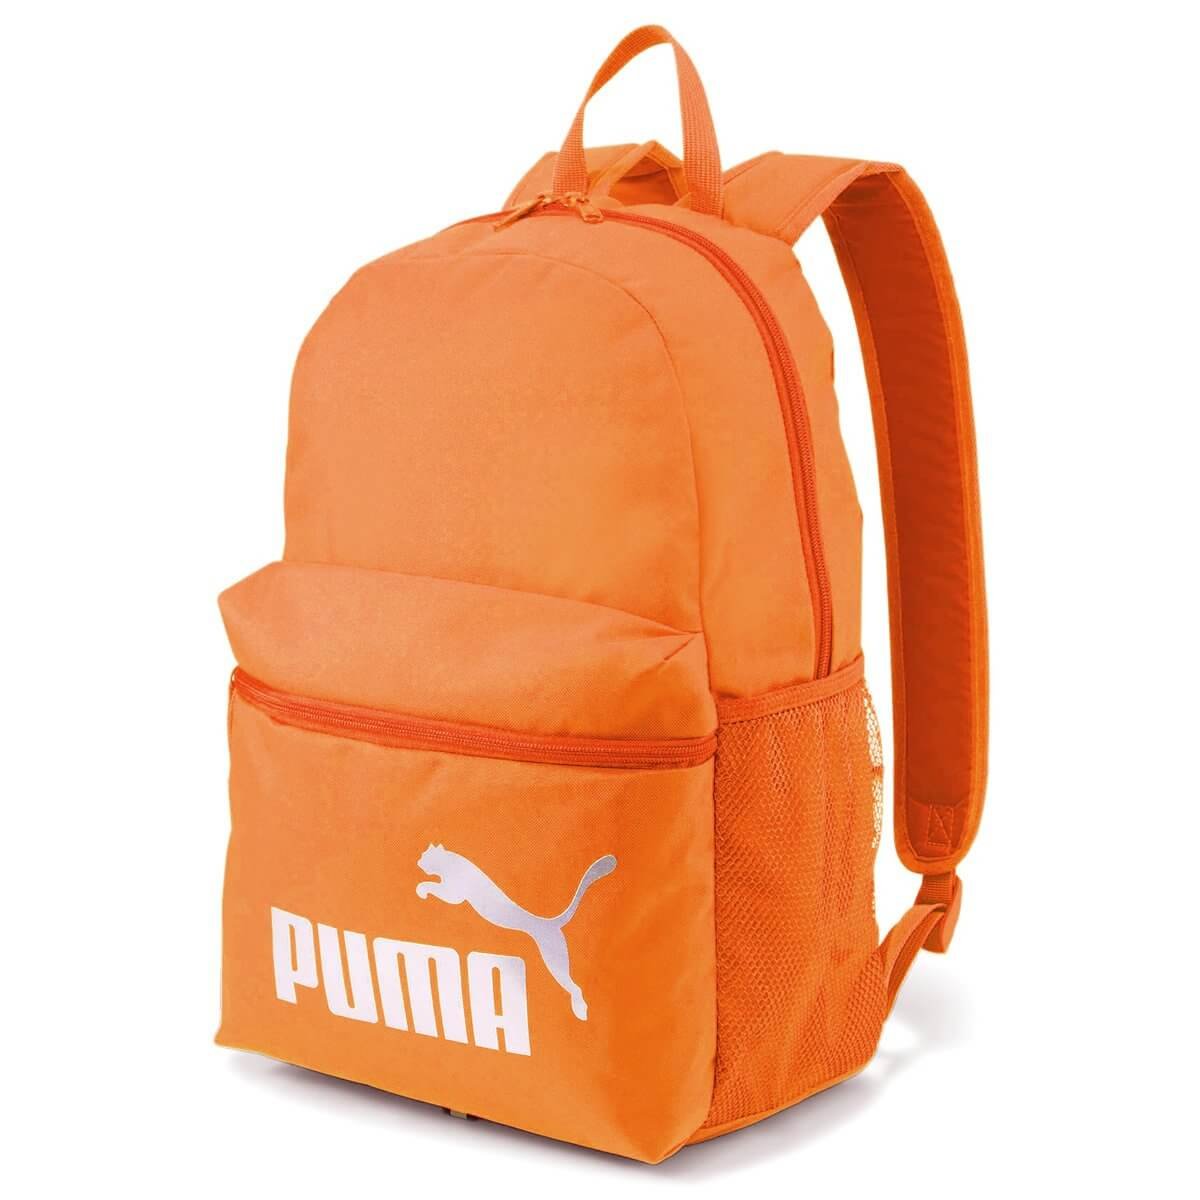 Mochila Puma Phase Backpack NAranja Unisex